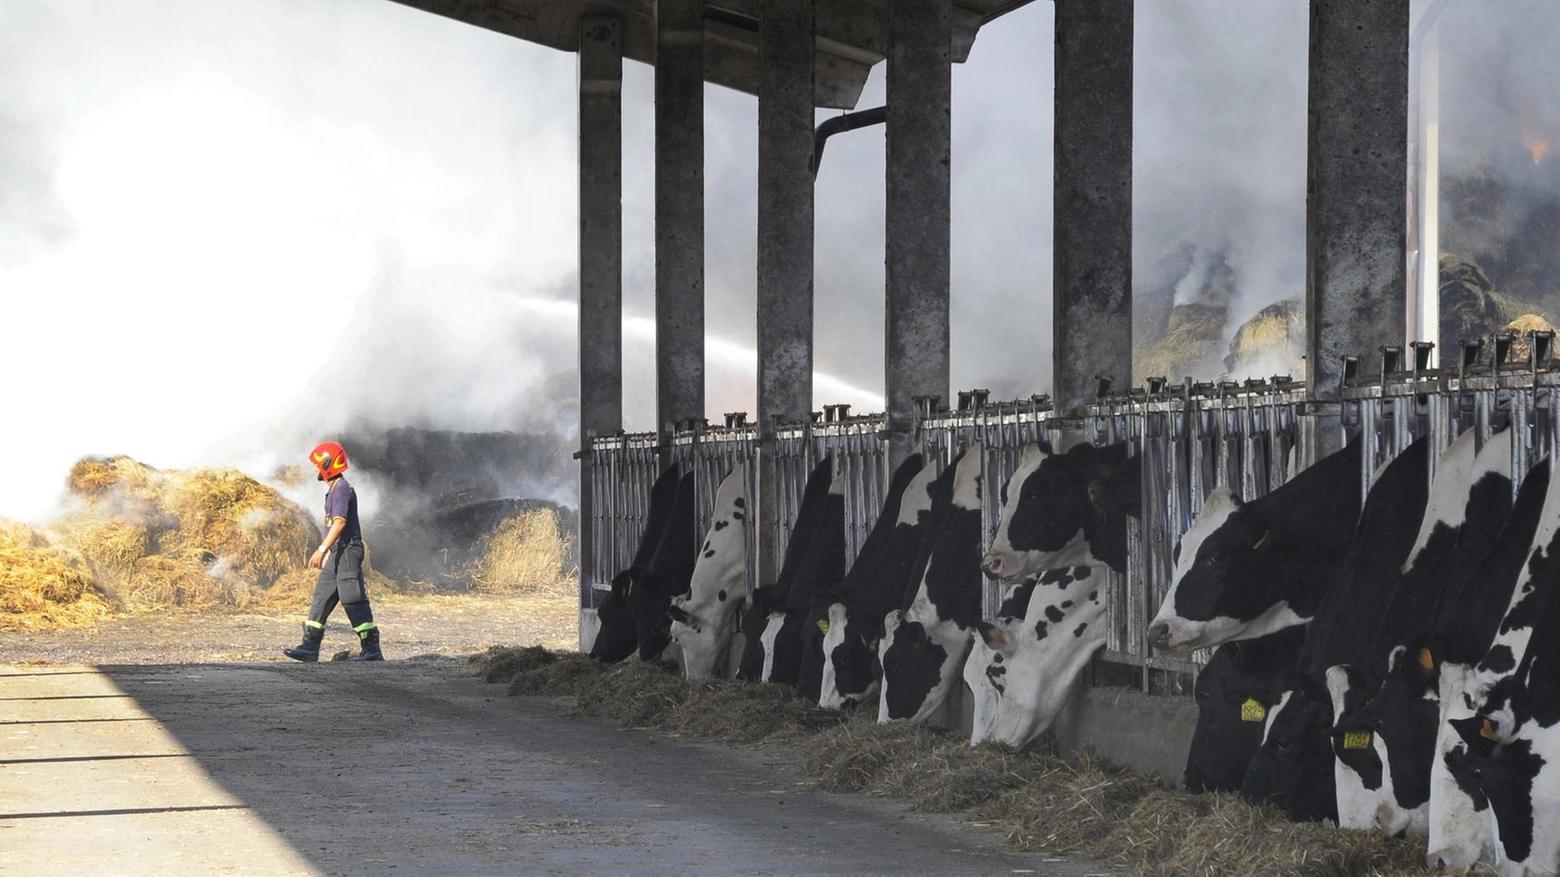 

Maxi rogo a Buccinasco salva decine di mucche da fienile distrutto